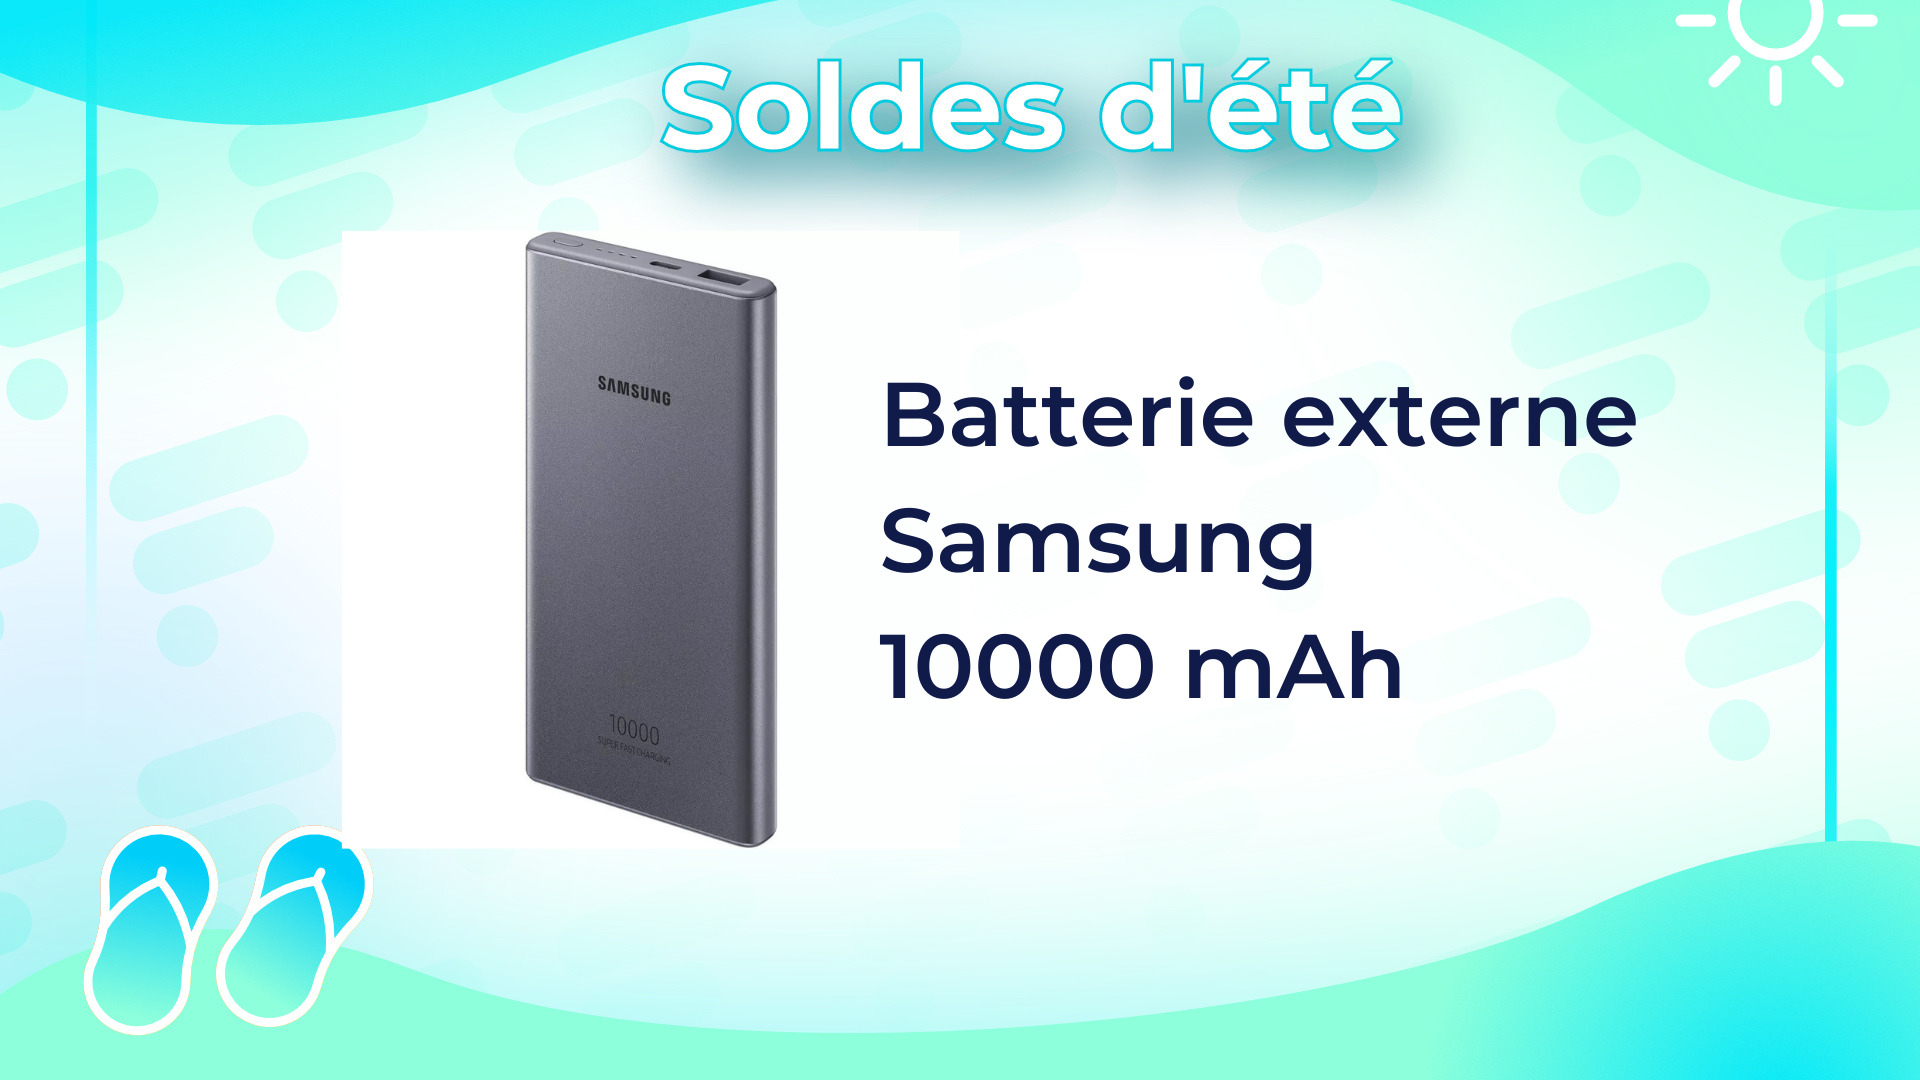 À seulement 10 euros, cette batterie externe Samsung peut devenir